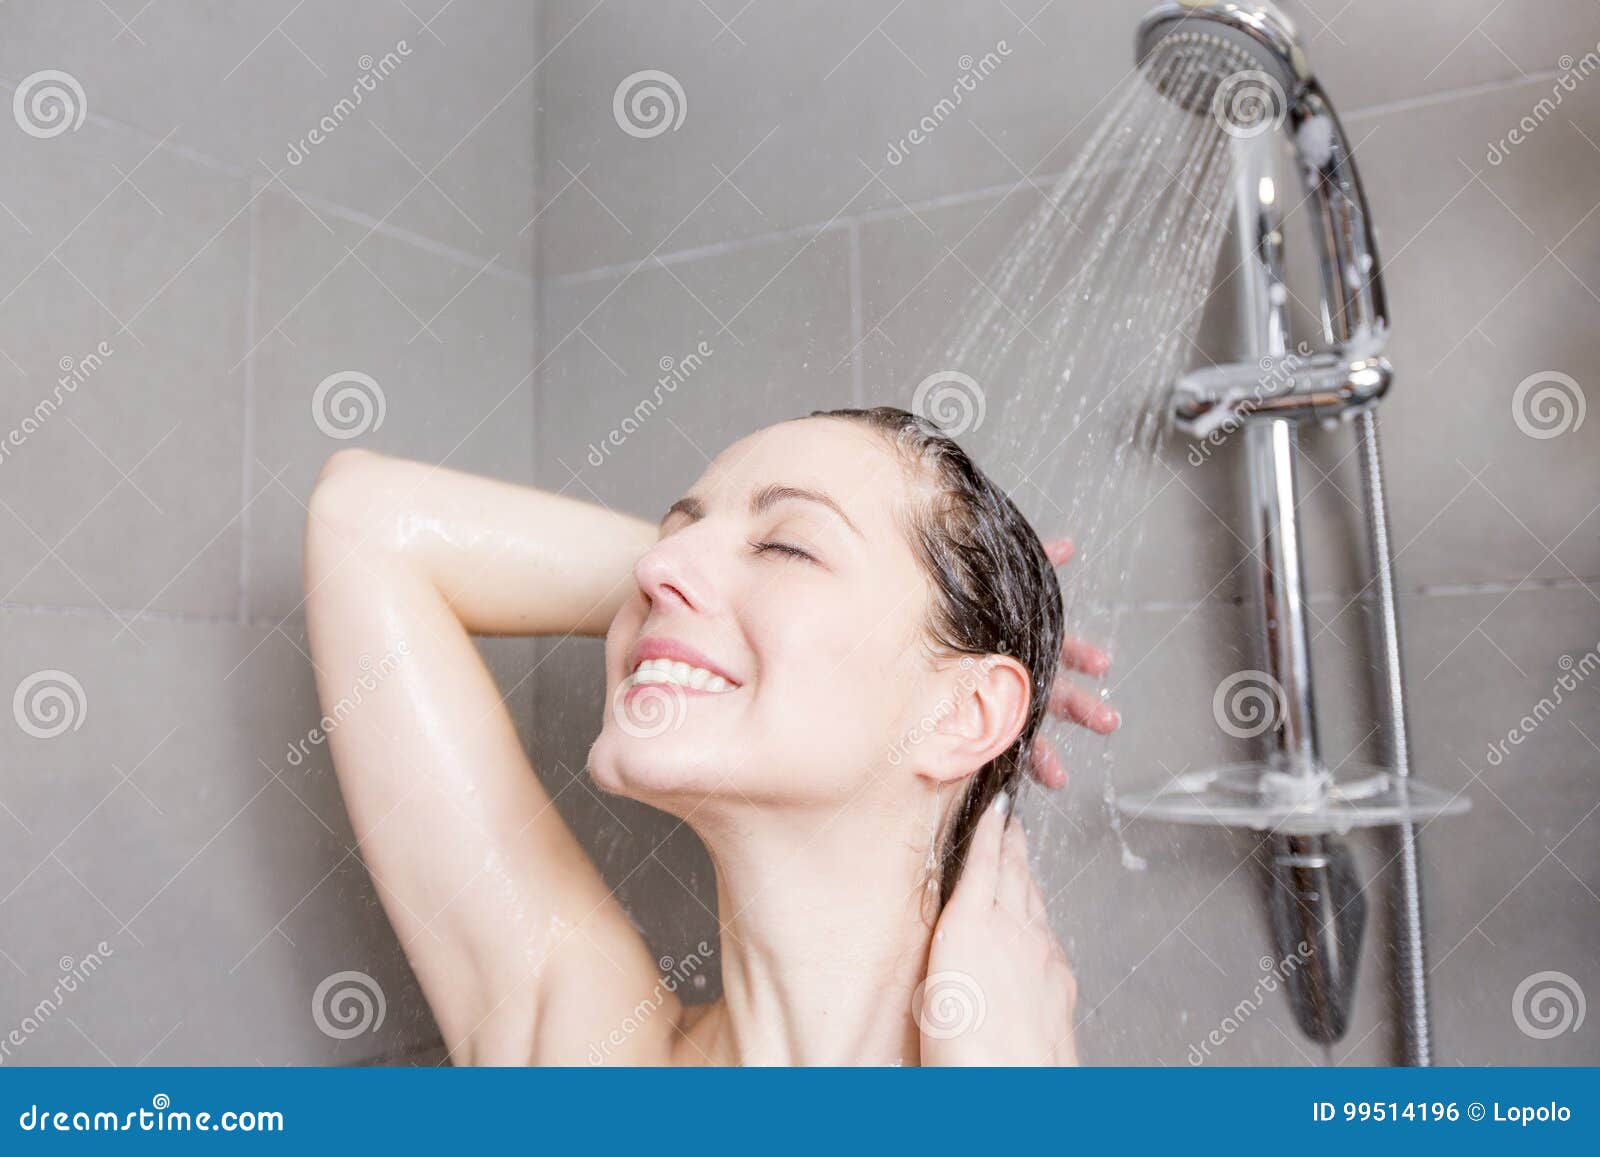 душем или струей воды оргазм фото 84